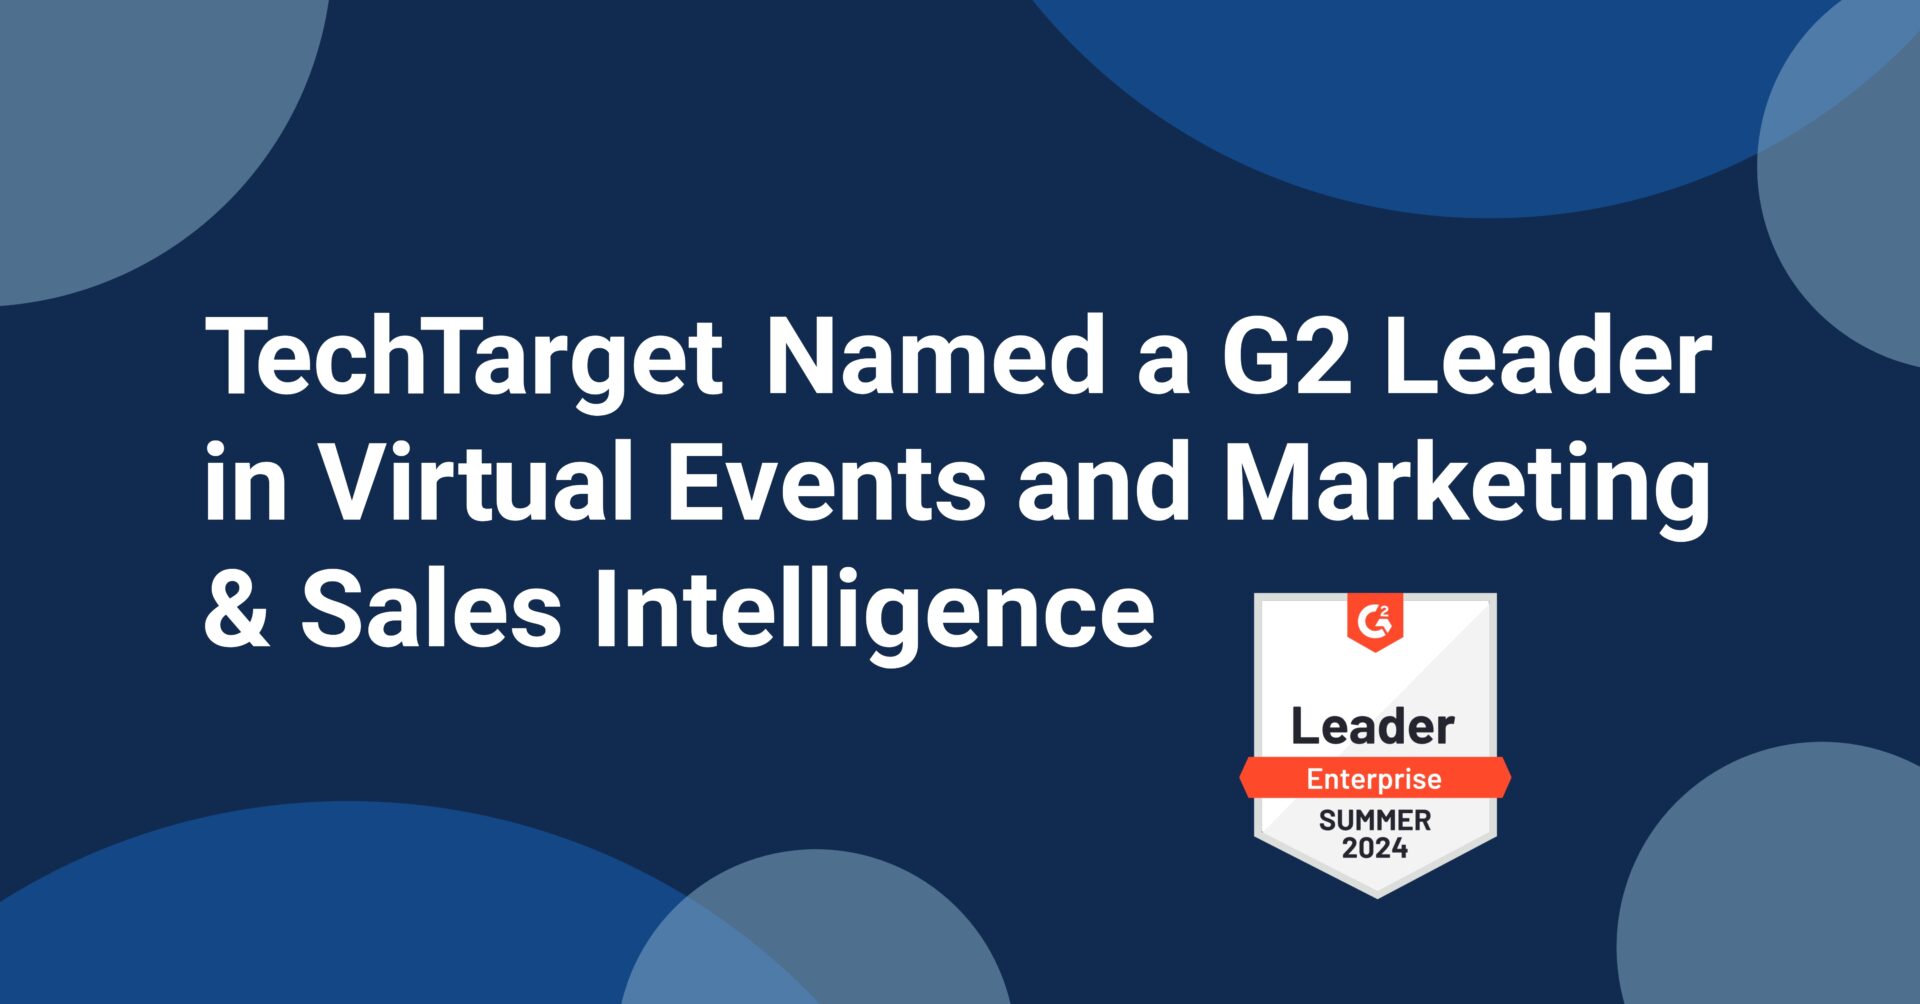 TechTarget named a G2 Leader